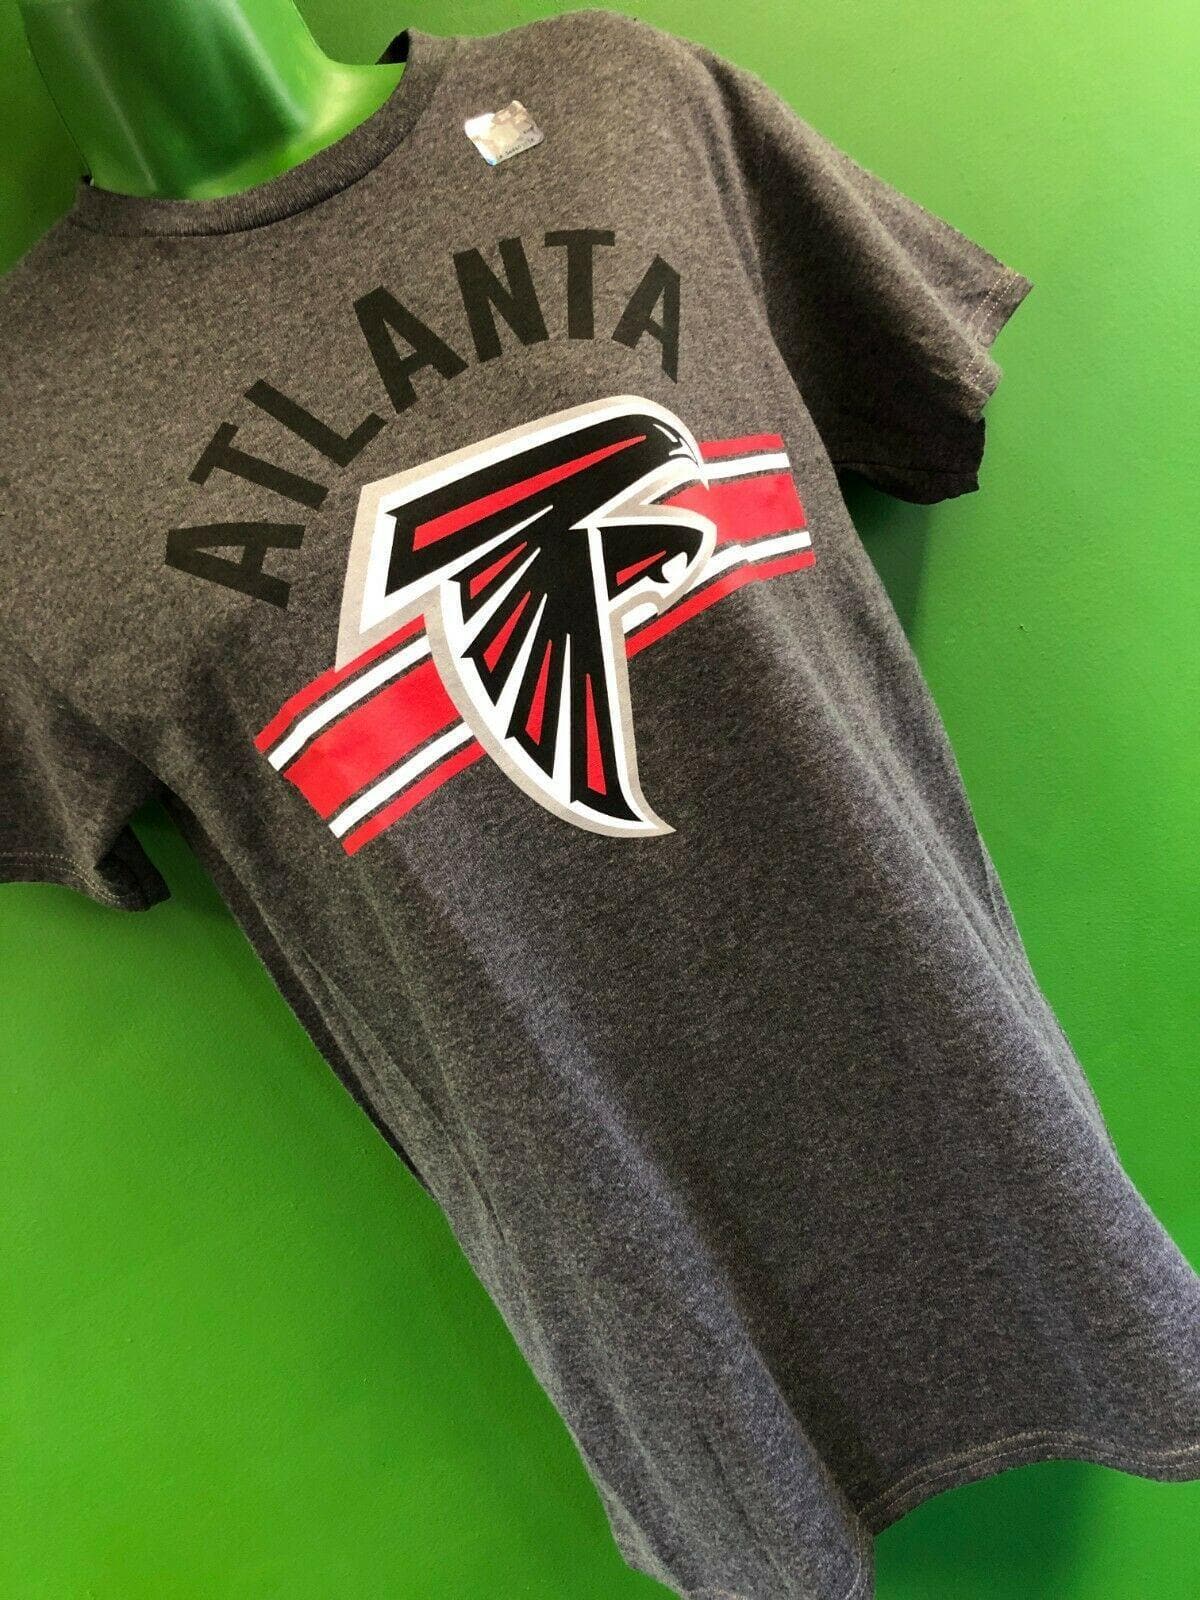 NFL Atlanta Falcons Junk Food T-Shirt Men's Small NWT